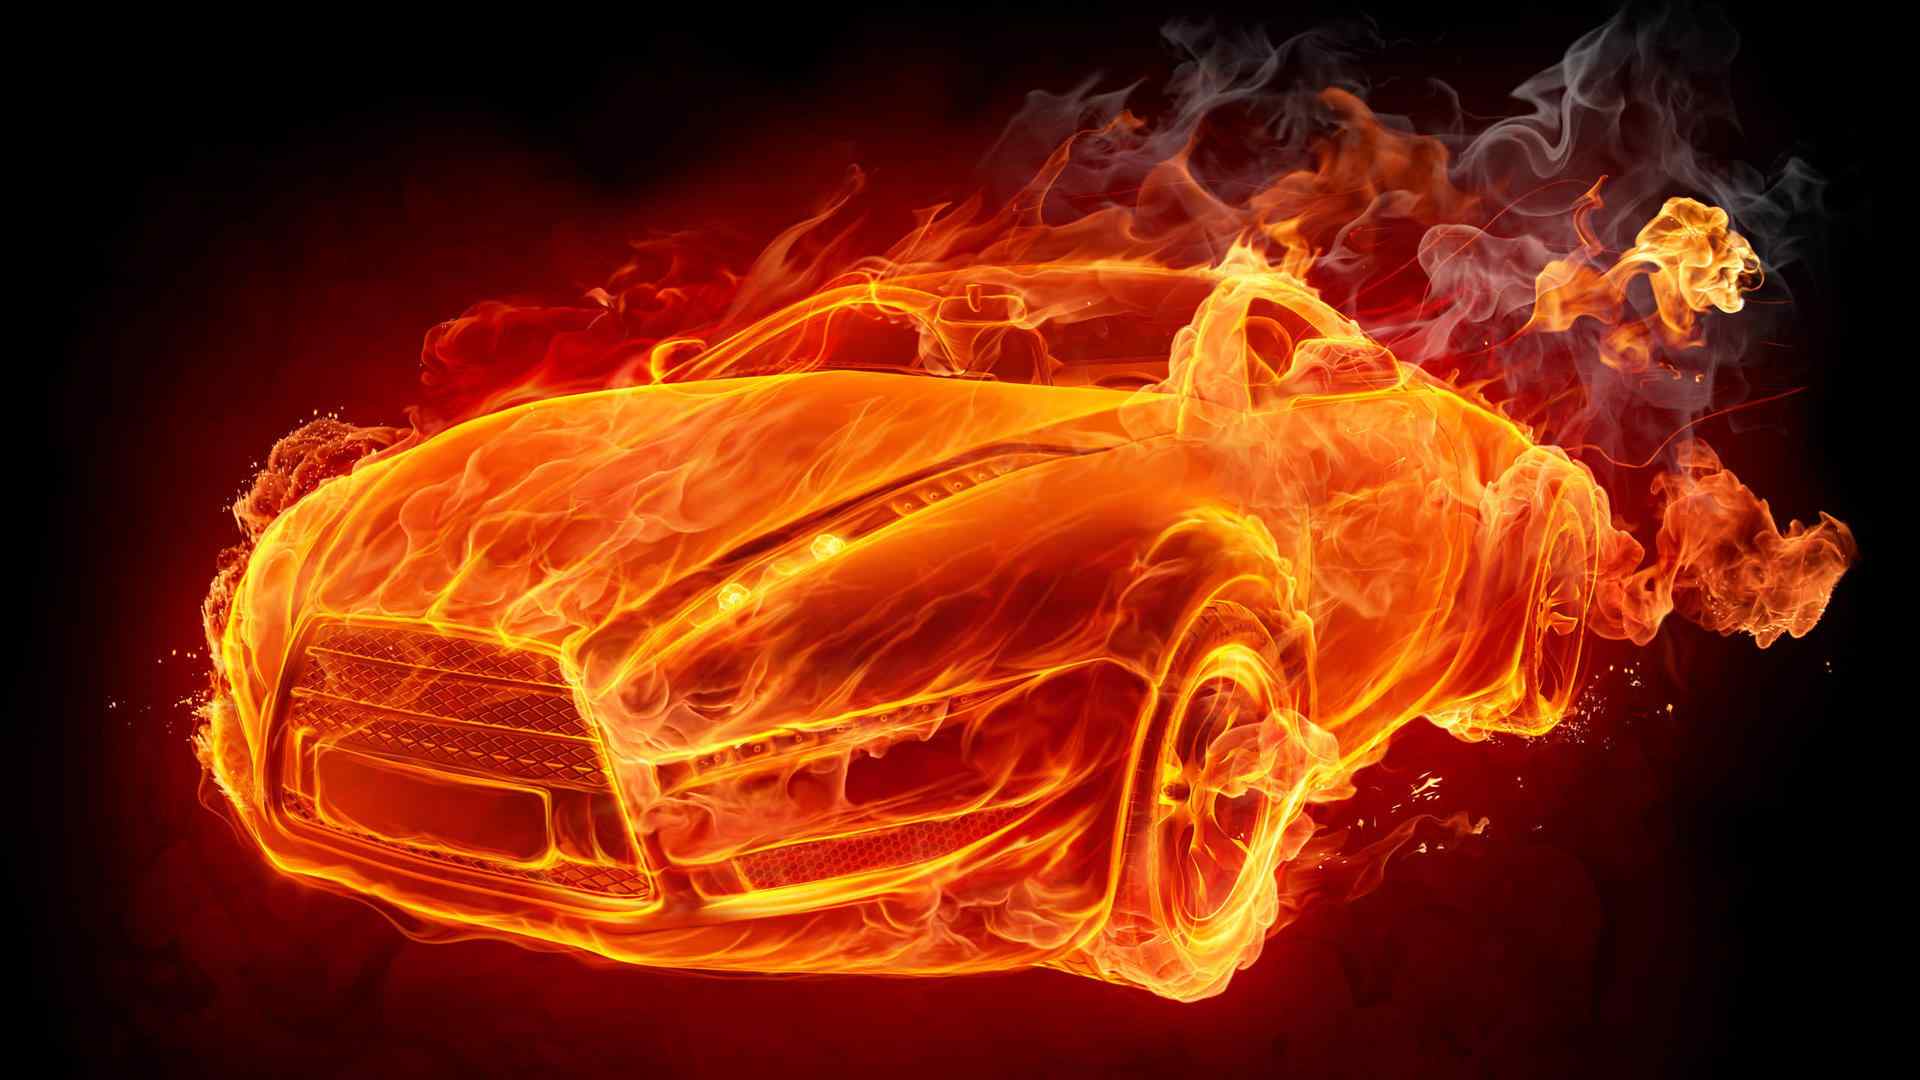 超酷的烈焰跑车霸气高清图片桌面壁纸